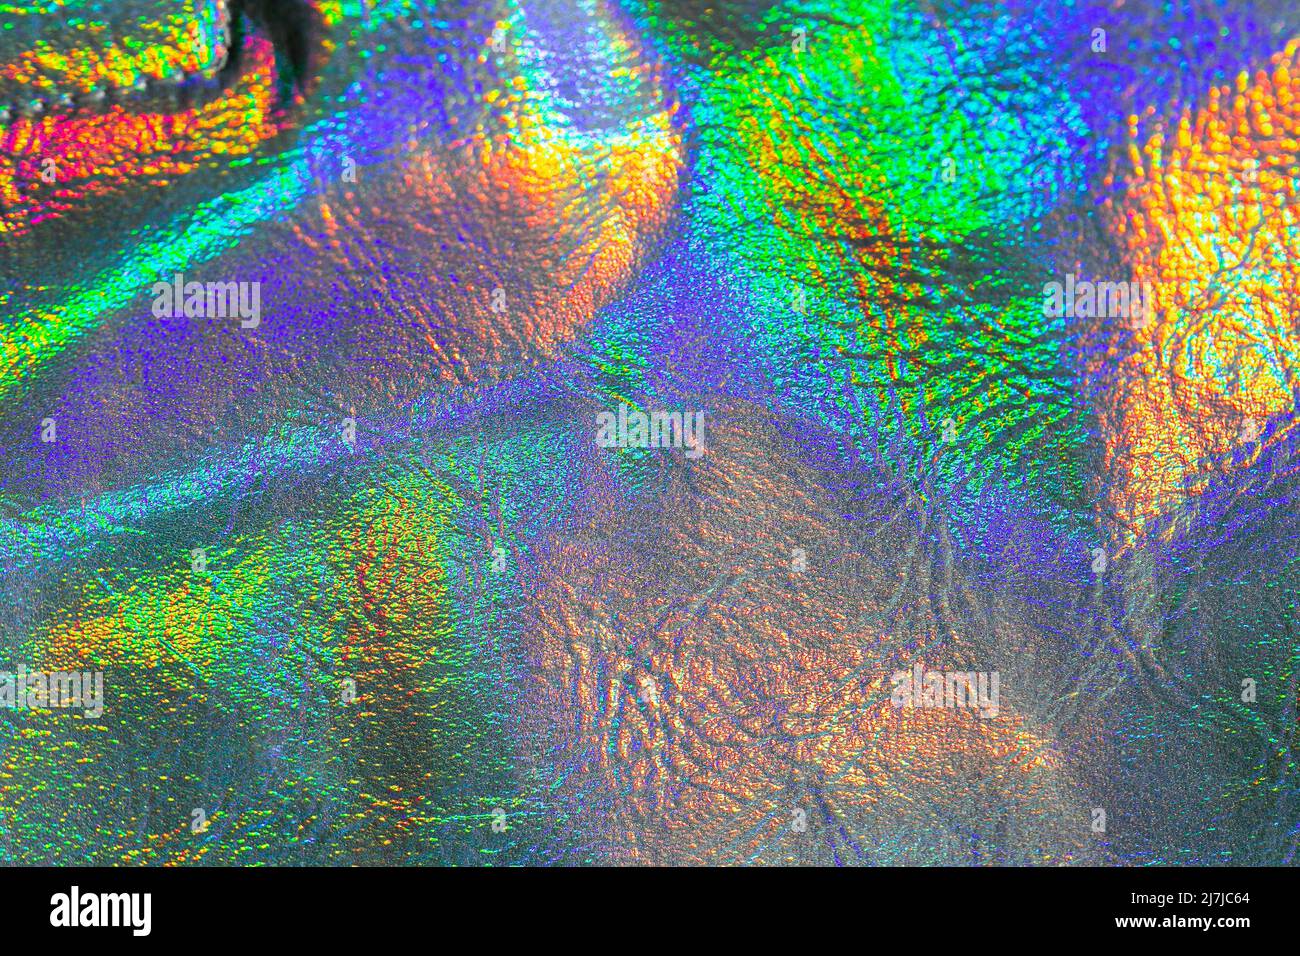 Tapete in silber, lila und grün Farben.Holografischer Hintergrund. Textur mit schillernden Wellen und Falten. Trendige holografischen Hintergrund. Stockfoto